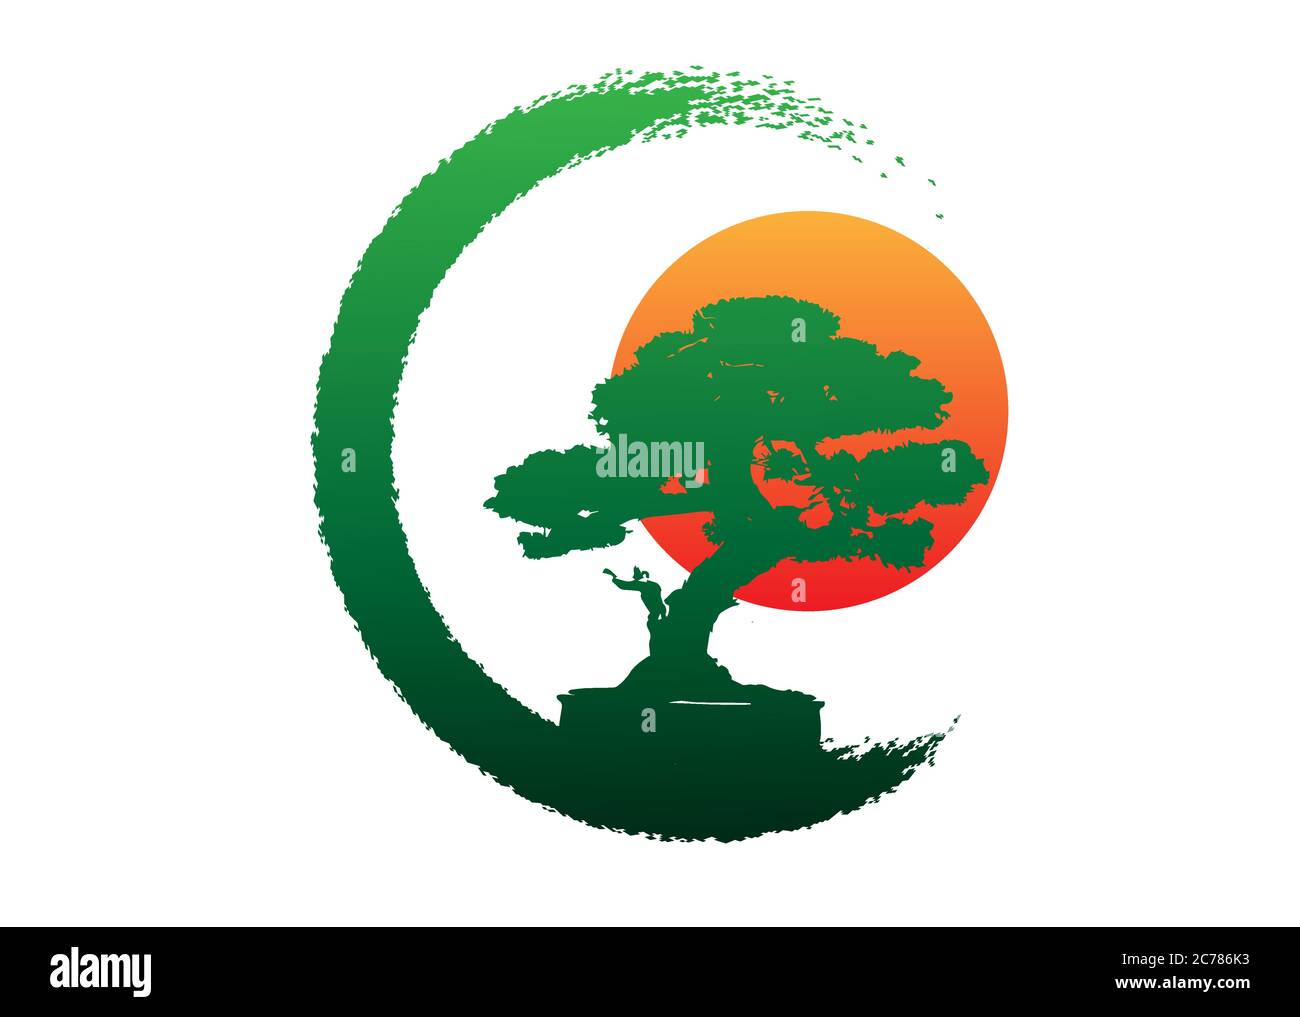 Logo de bonsaï japonais, icônes de silhouette de plante sur fond blanc, silhouette écologique verte de bonsaï et coucher de soleil. Image détaillée. Signe de la nature bio Illustration de Vecteur